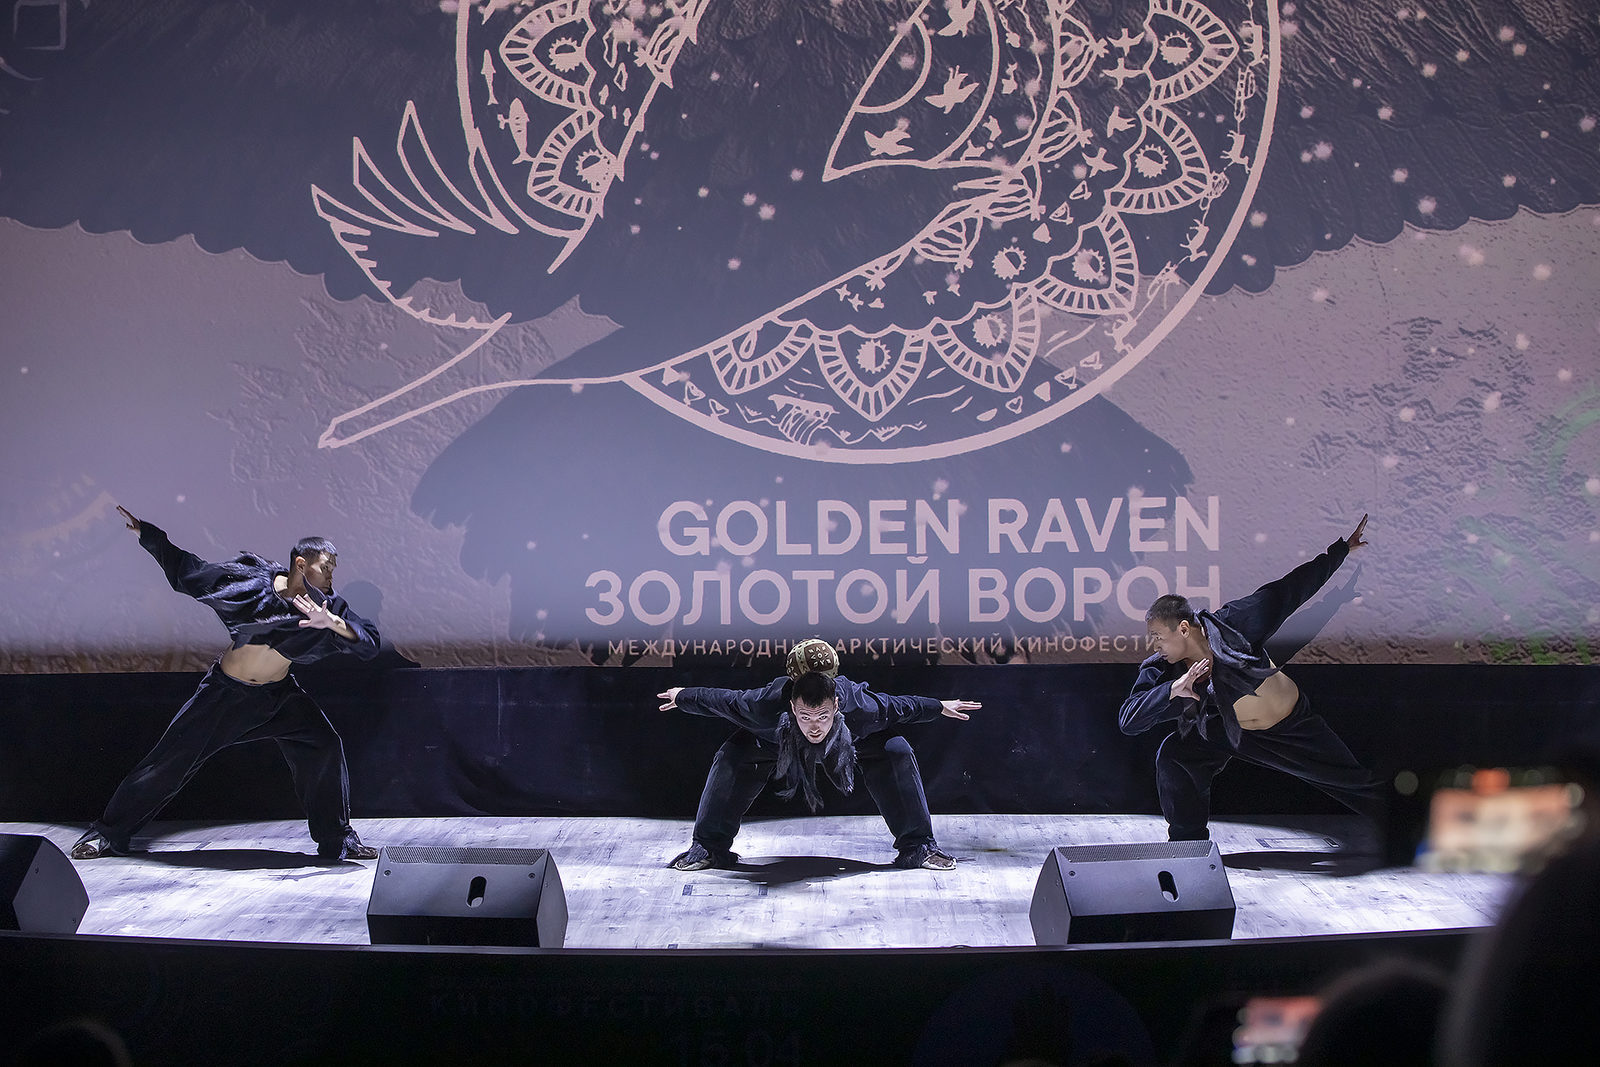 VIII Арктический международный кинофестиваль «Золотой ворон» открылся мировой премьерой ленты «Там, где танцуют стерхи» Михаила Лукачевского